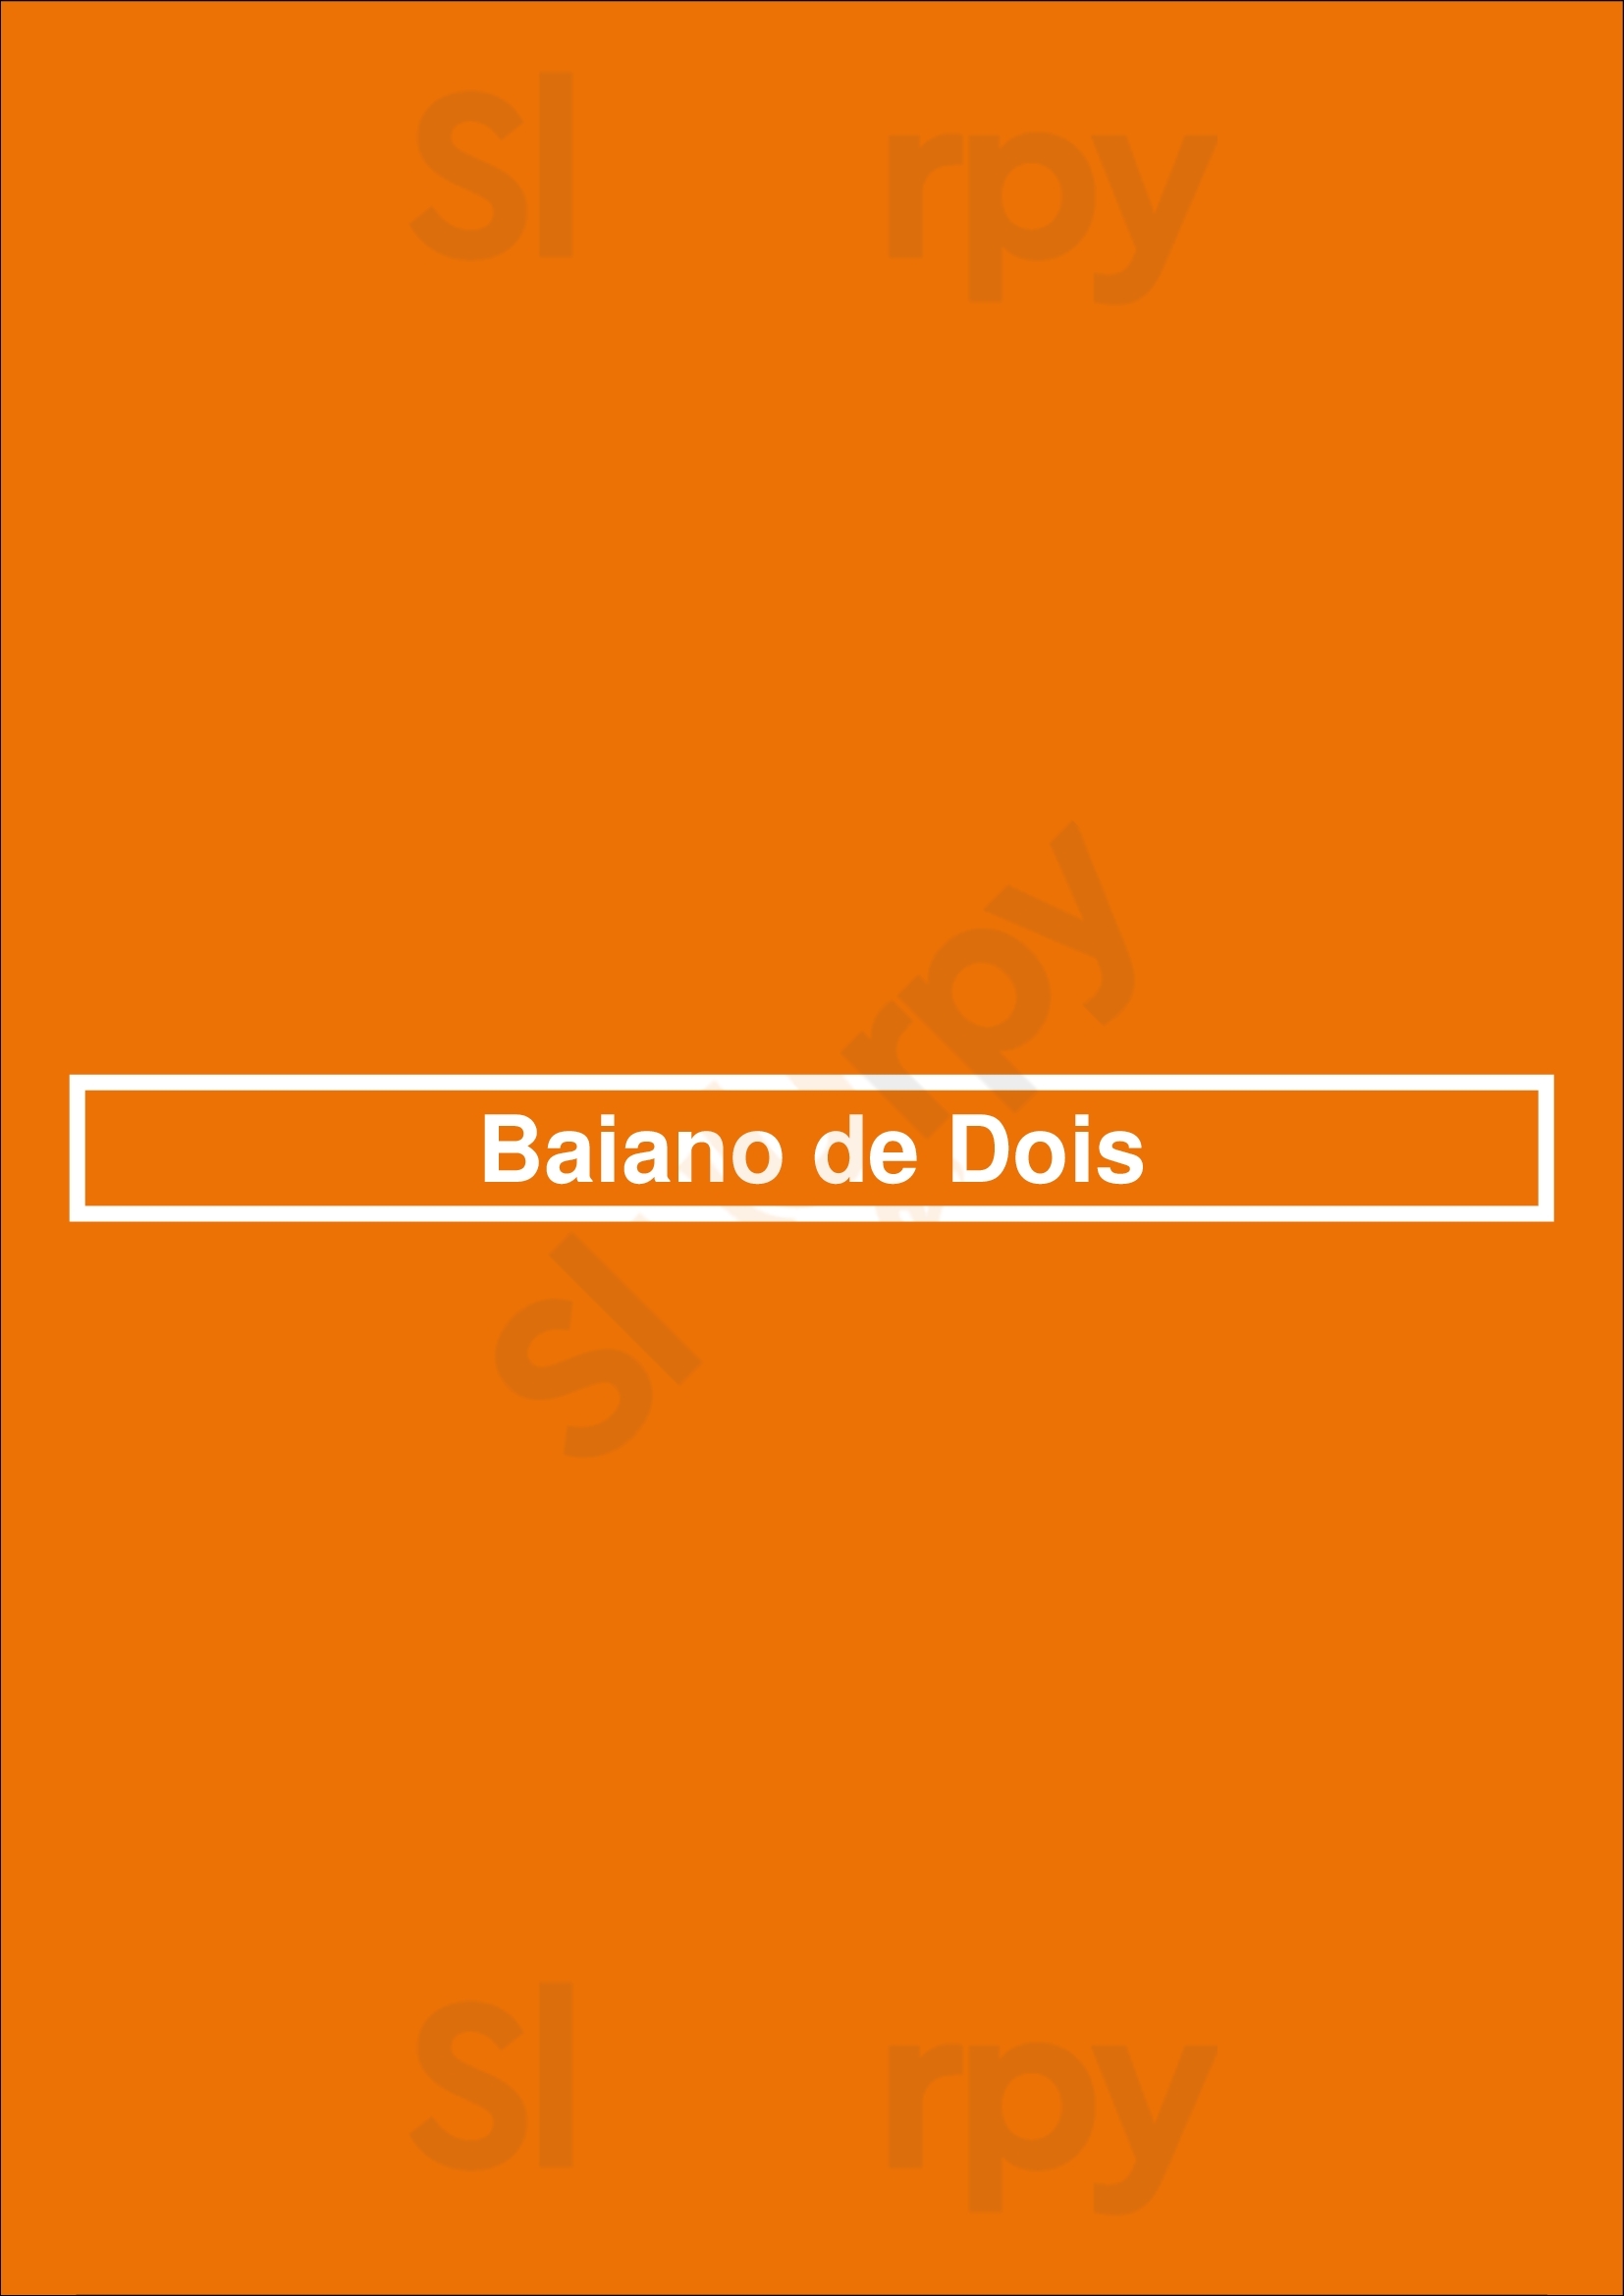 Baiano De Dois São Paulo Menu - 1